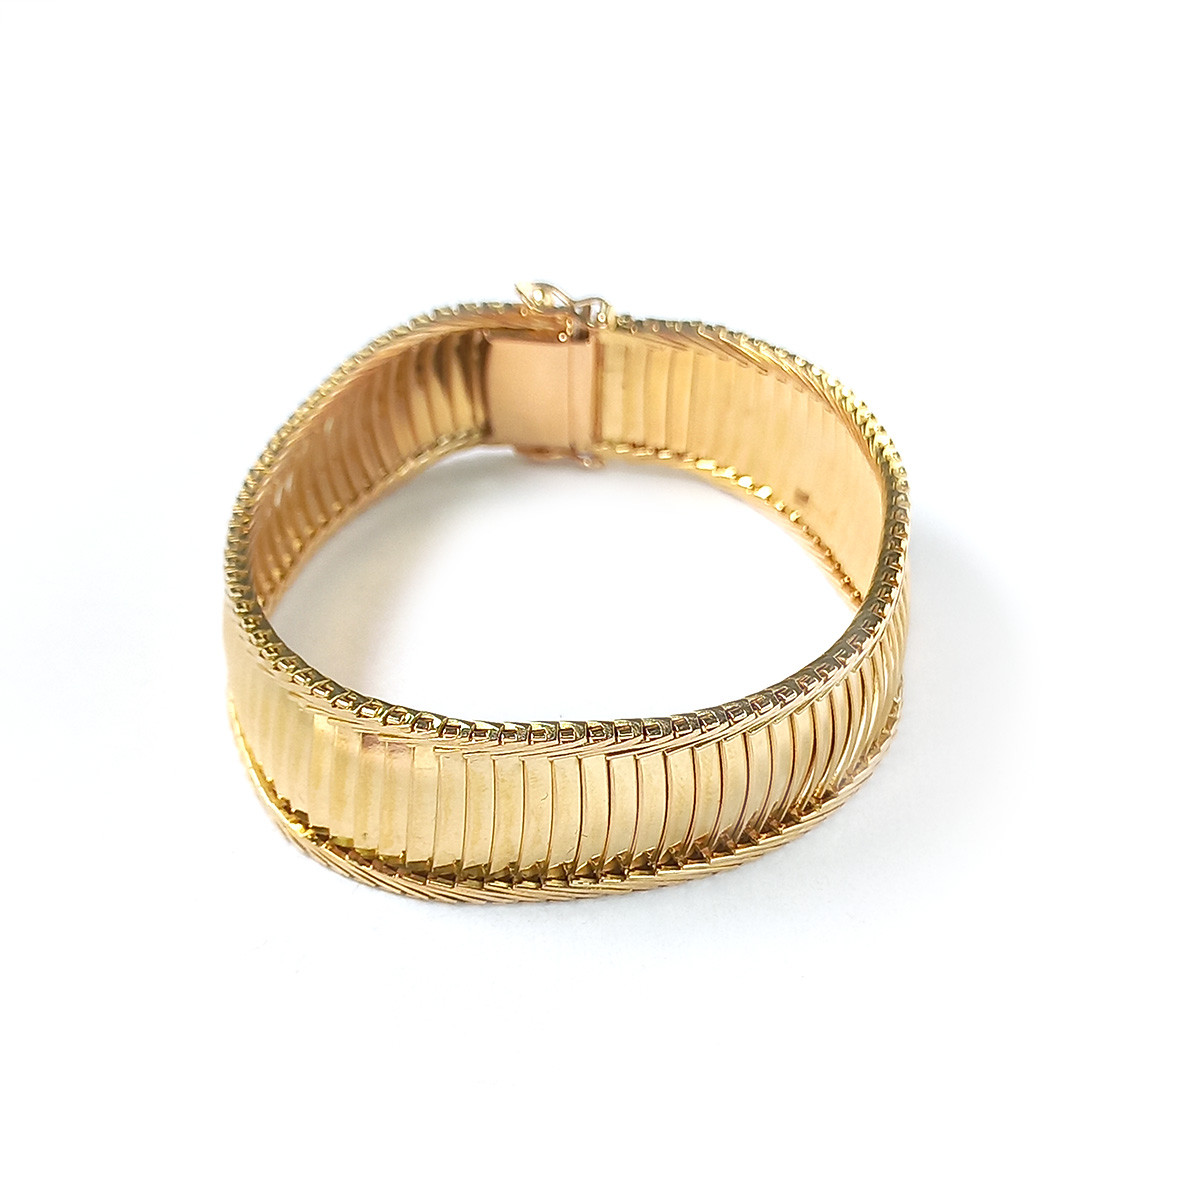 Bracelet d'occasion or 750 jaune maille omega 19 cm